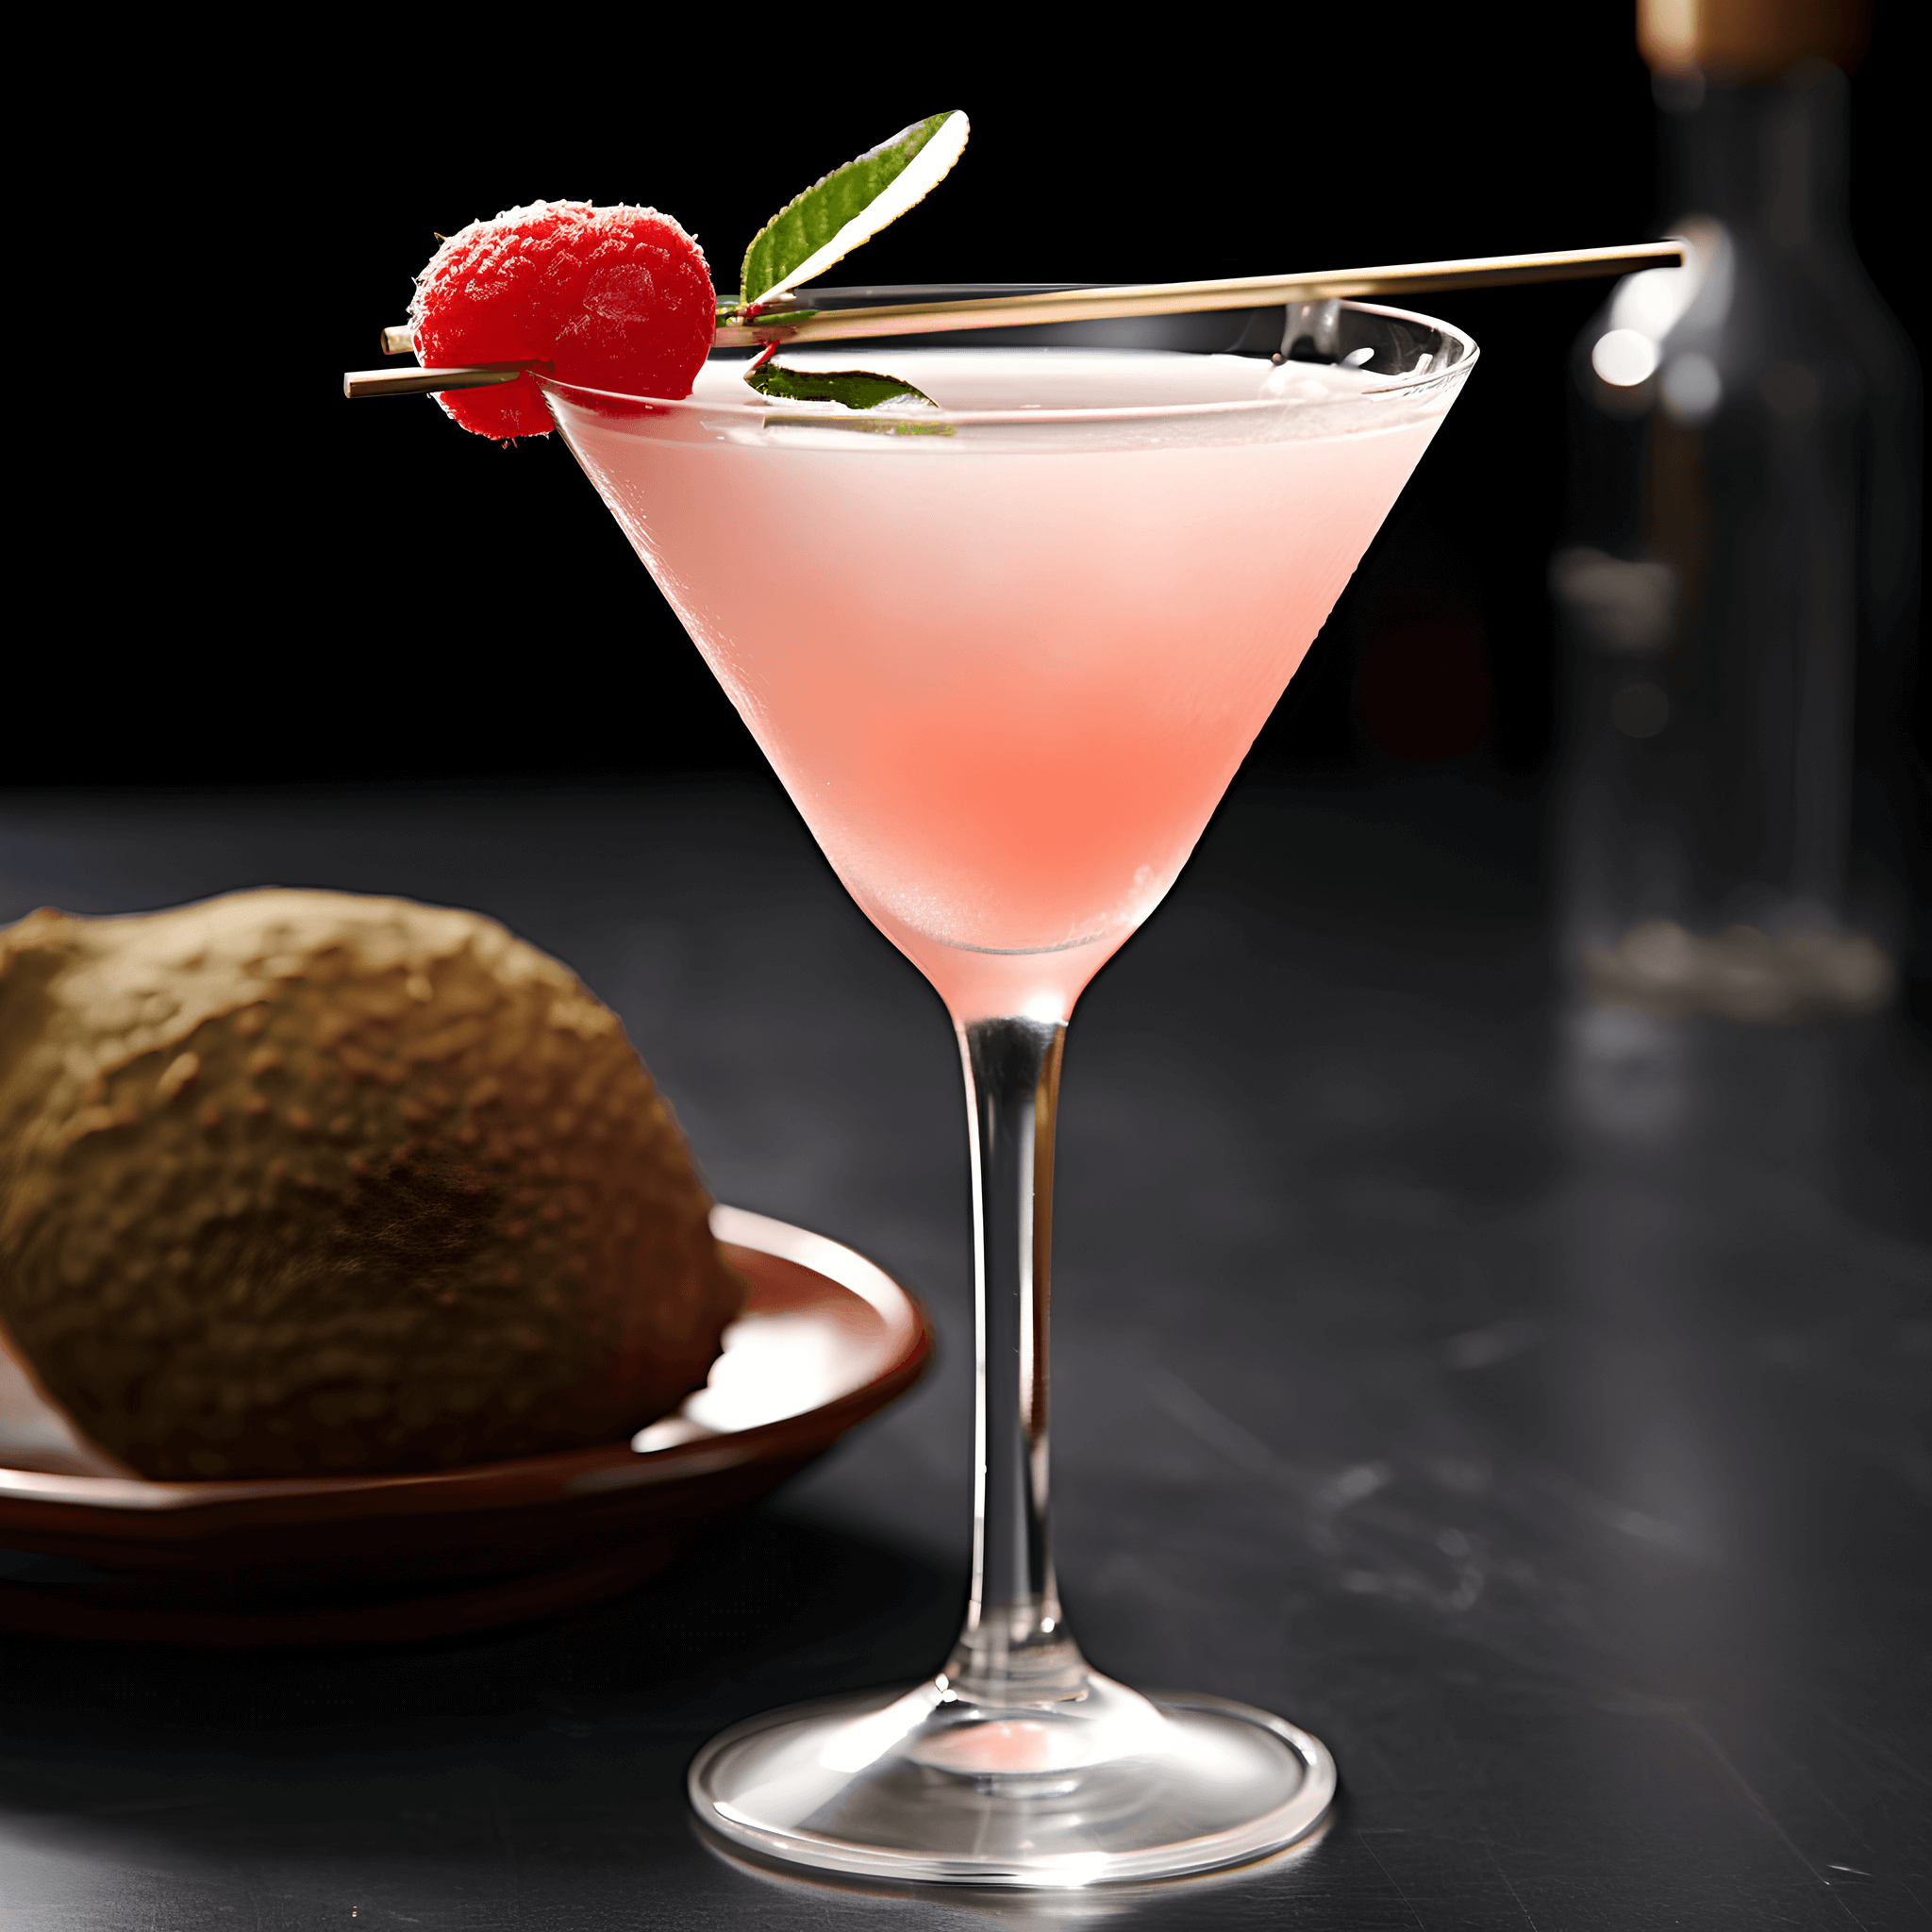 El Martini de Lichis tiene un sabor delicado, dulce y ligeramente floral con un toque de acidez. La fruta de lichi agrega un sabor único y exótico, mientras que el vodka proporciona un final suave y limpio.